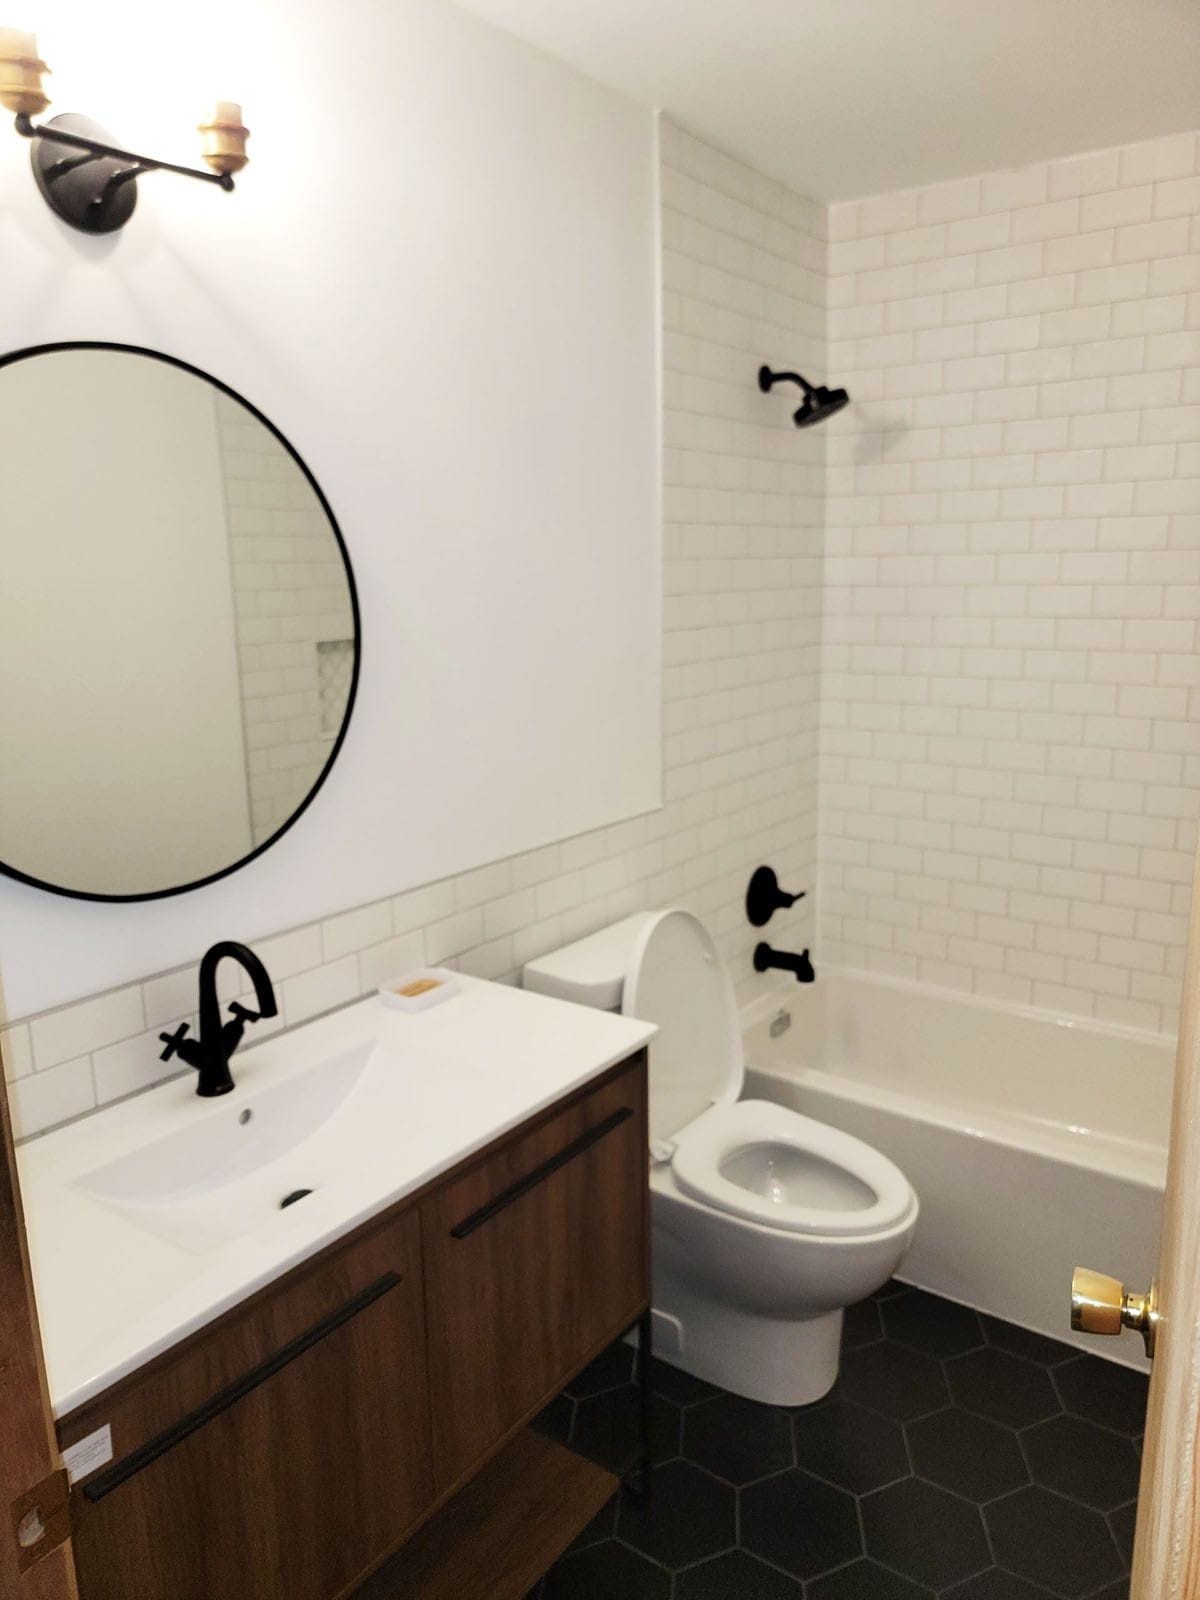 Bathroom Sink, Bathtub, Toiler Bowl and Shower